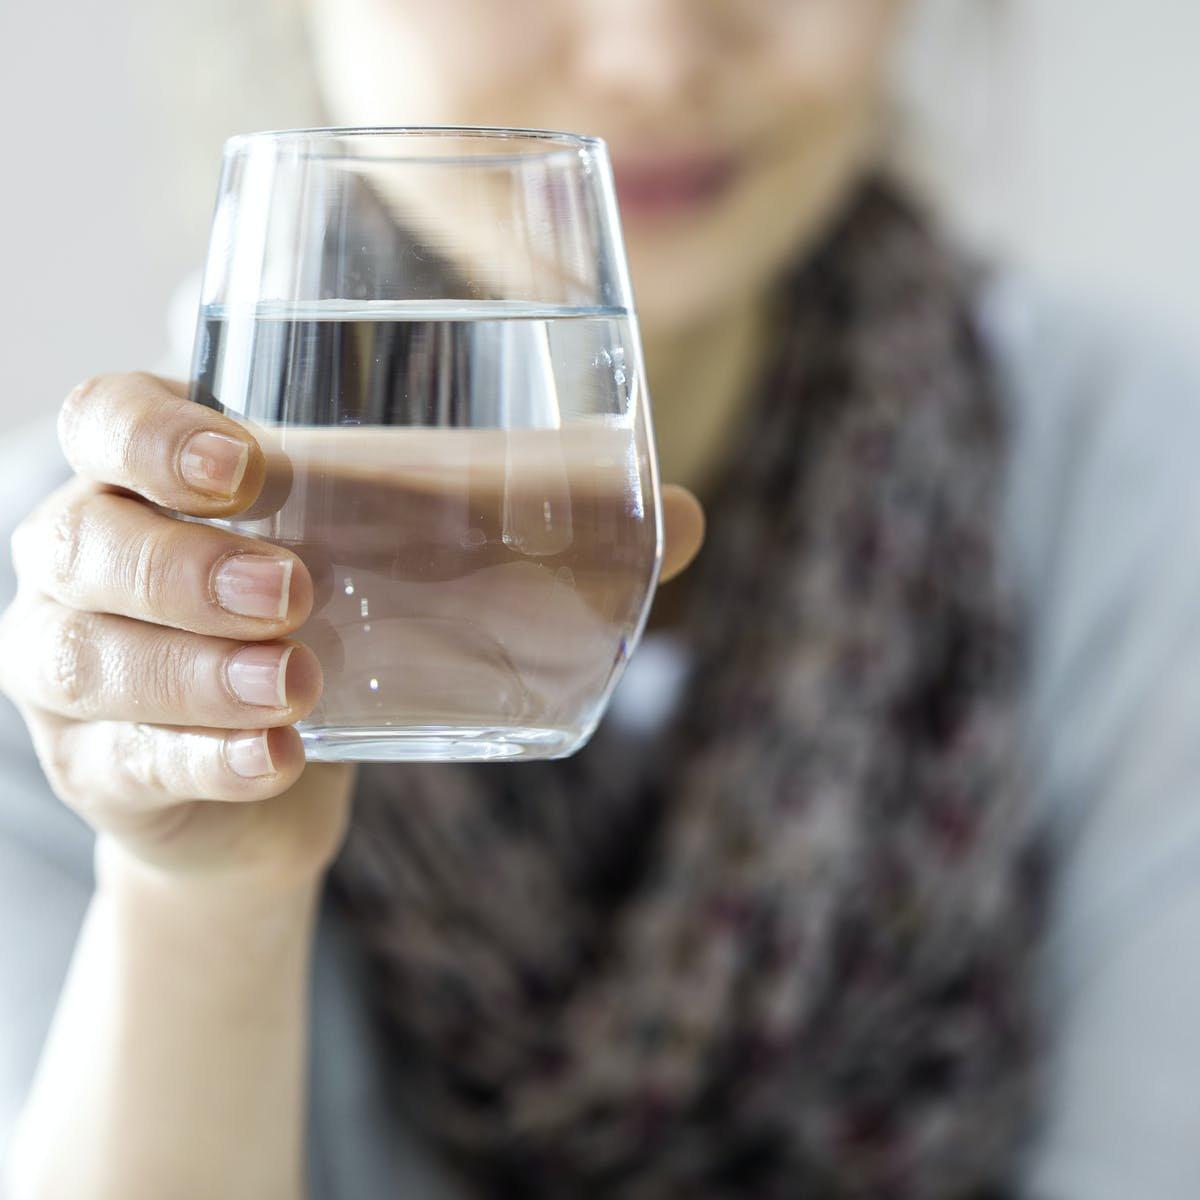 15. क्या पानी पीने से भी वायरस हो सकता है? ,[object Object]